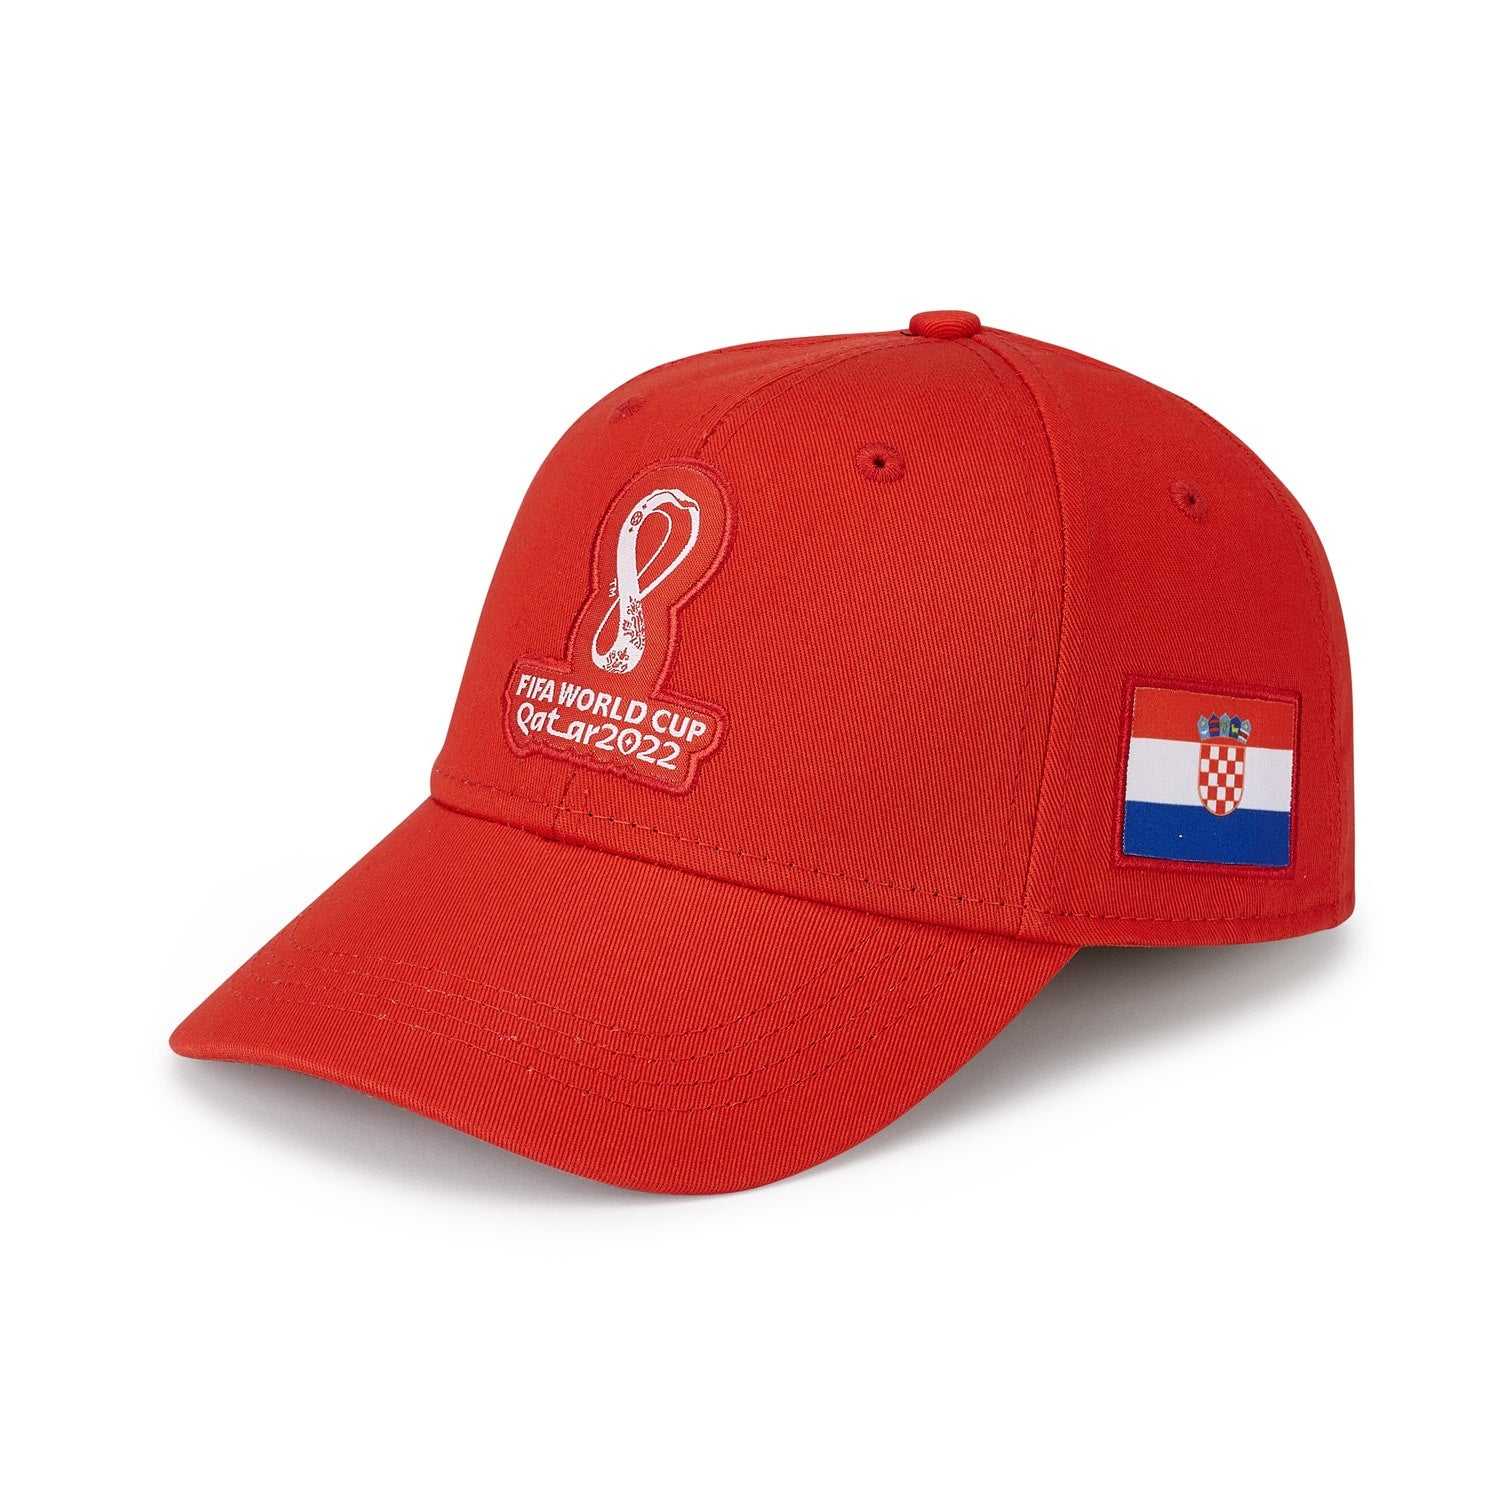 2022 World Cup Croatia Red Cap - Men's